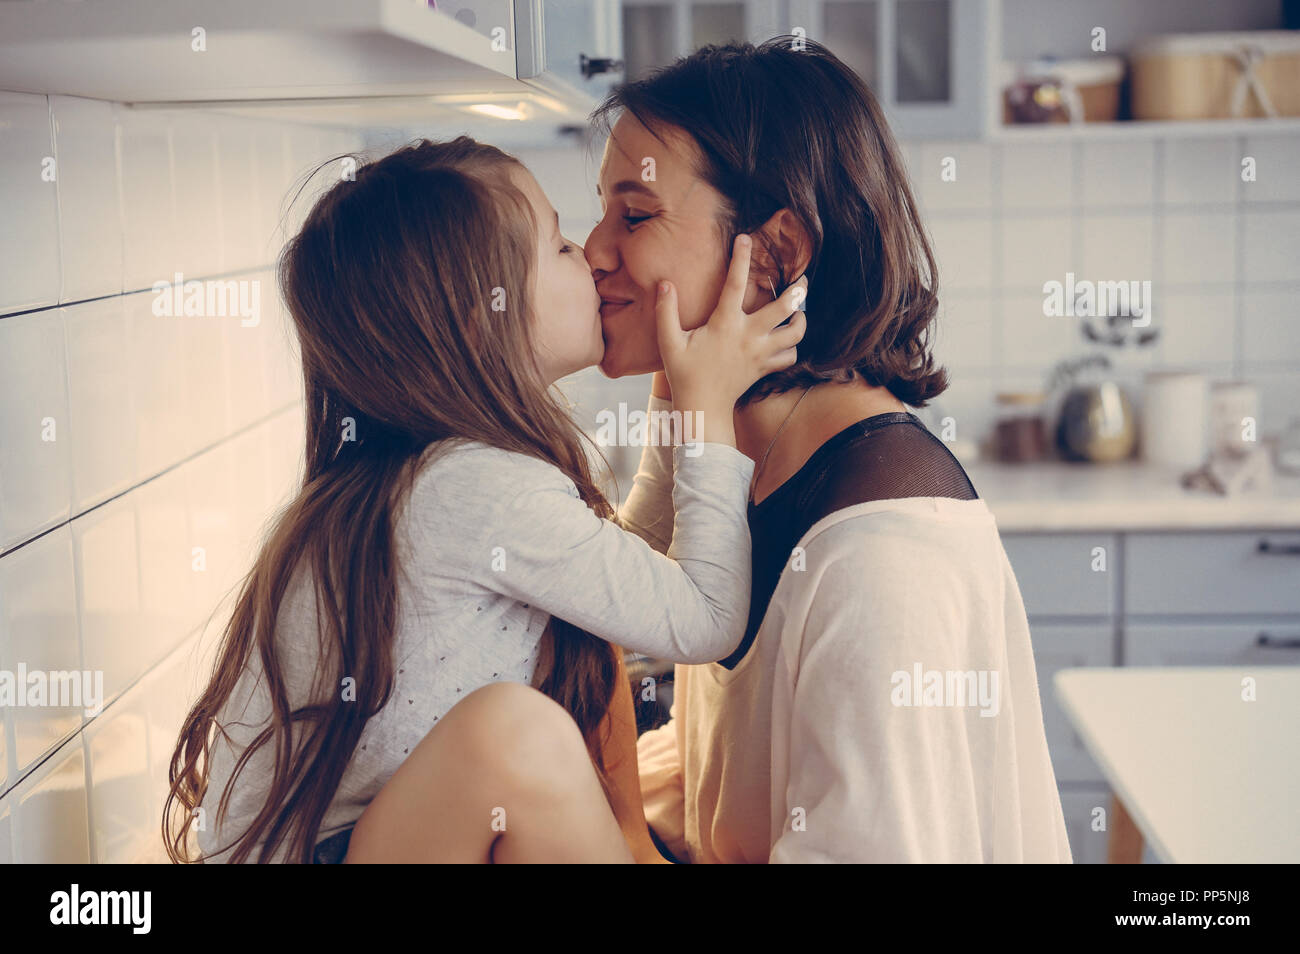 Мамы лесбиянки с русскими разговорами. Мама с дочкой поцелуй. Мама целует дочь. Молодые лесбияночки на кухне. Мать и дочь поцелуй с языком.